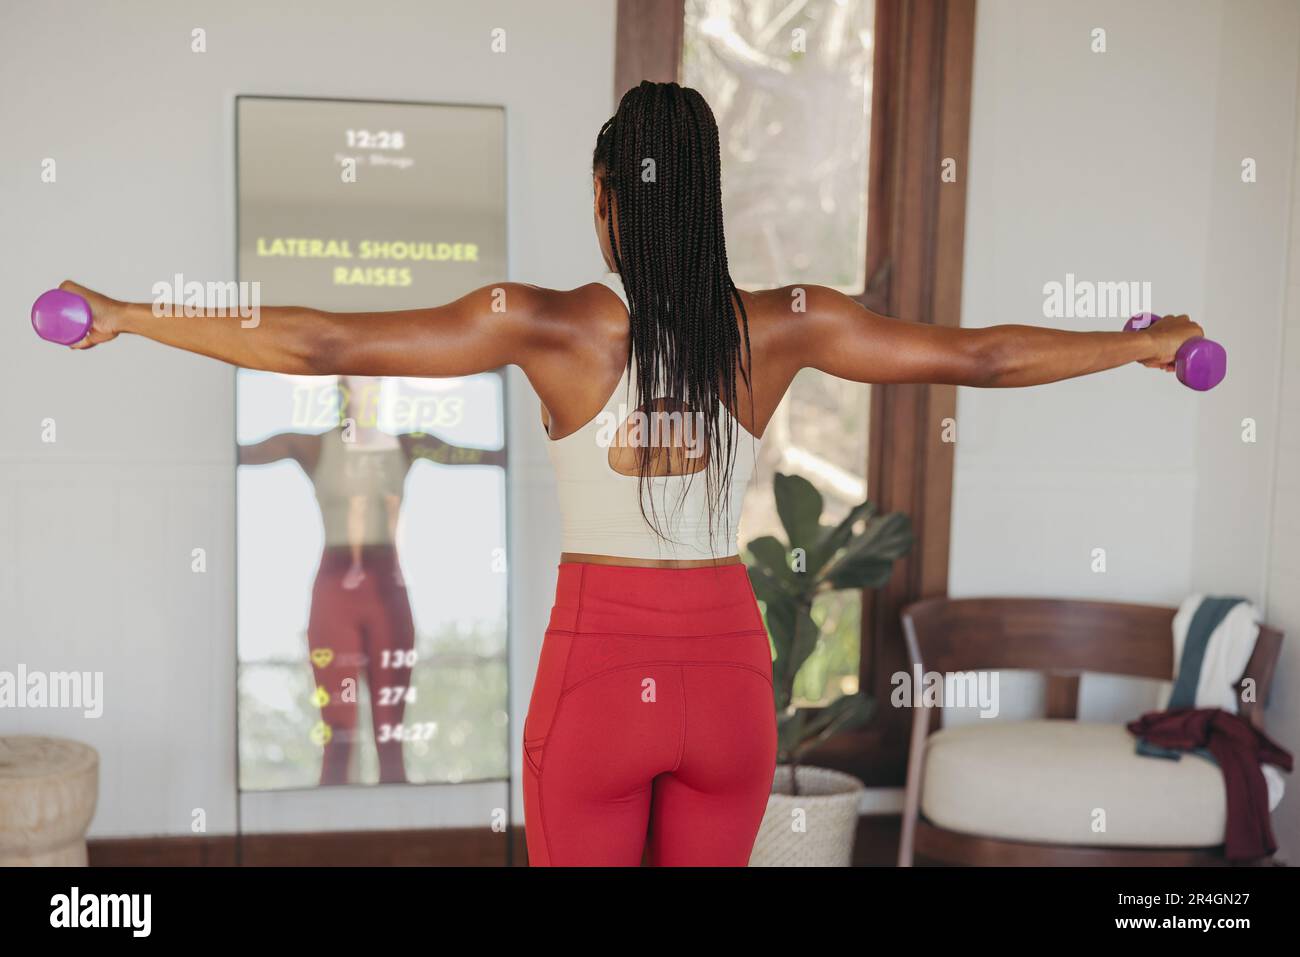 Durch die Teilnahme an einem virtuellen Trainingskurs über einen intelligenten Fitnessspiegel ergänzt eine Frau ihr Workout um Kurzhanteln-Übungen, indem sie eine fortschrittliche Passform verwendet Stockfoto